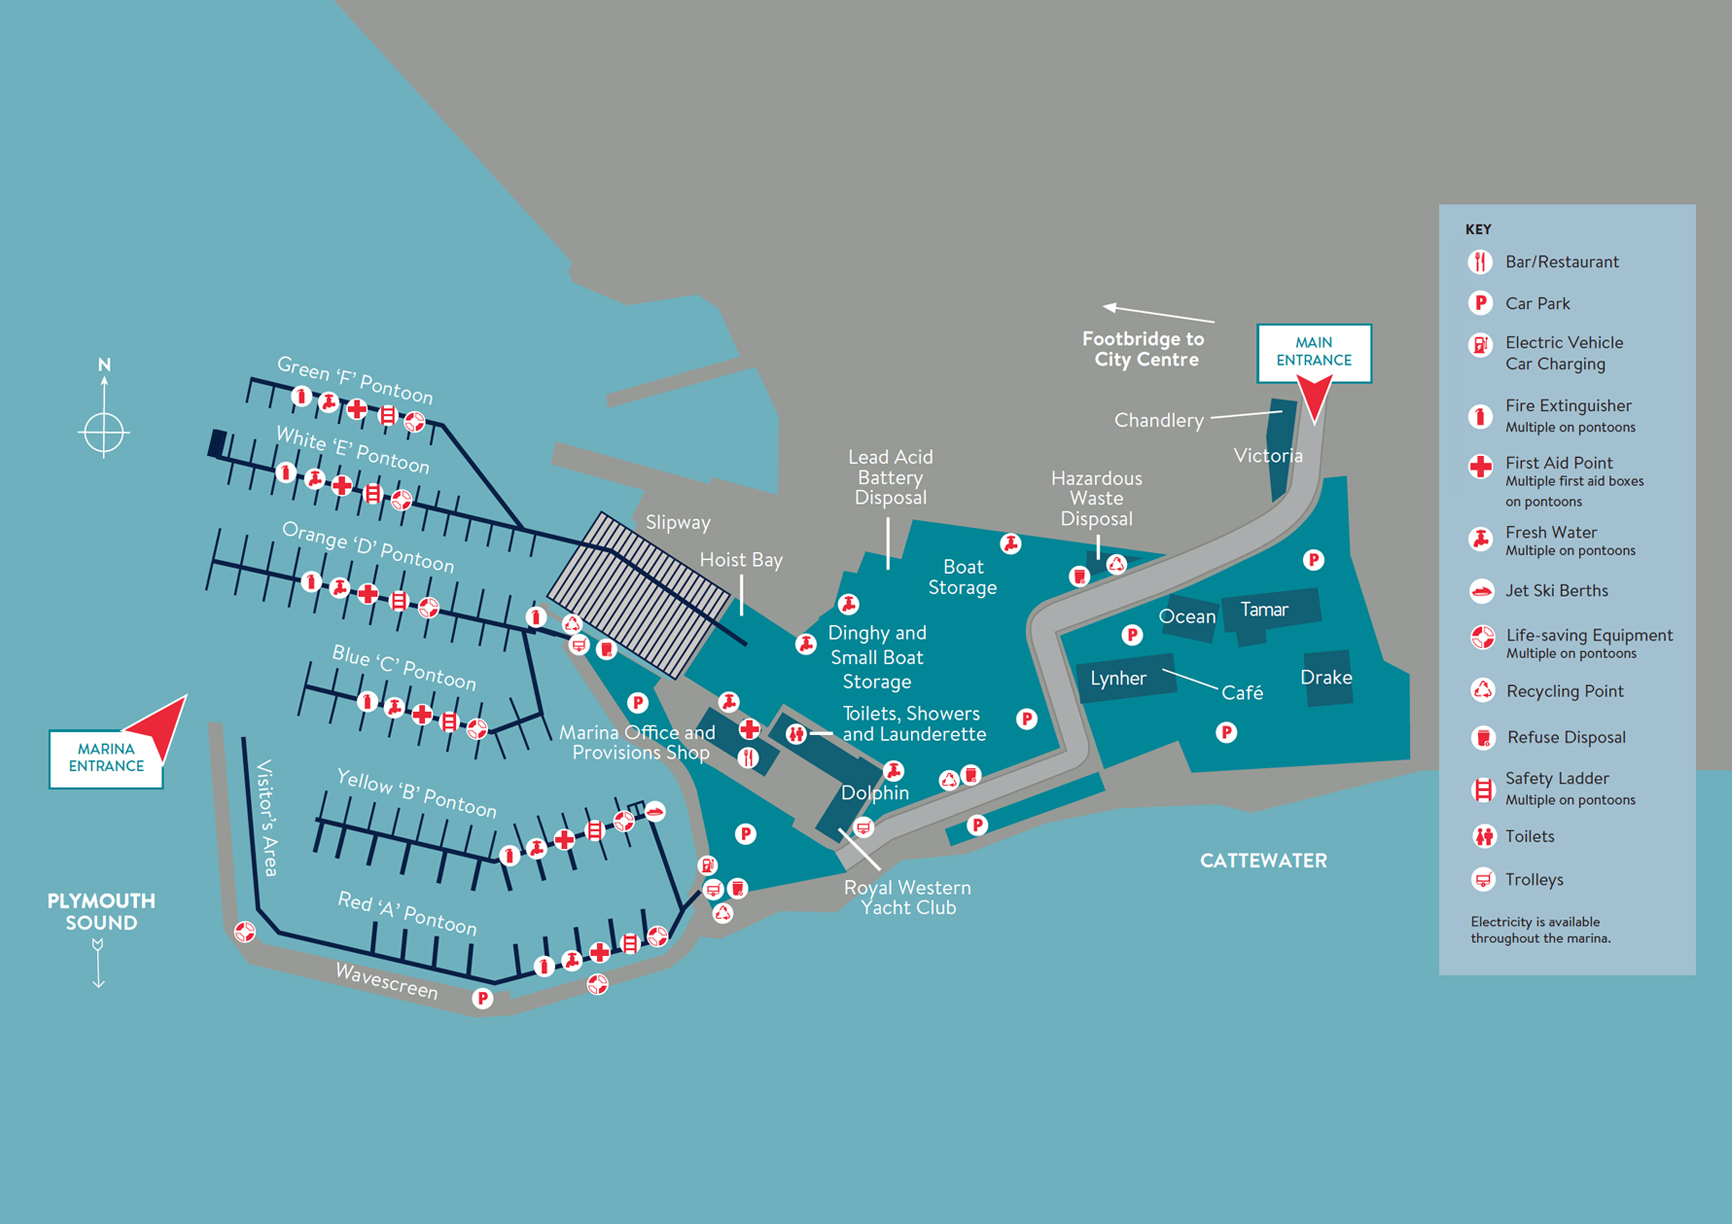 Queen Anne's Marina Plan